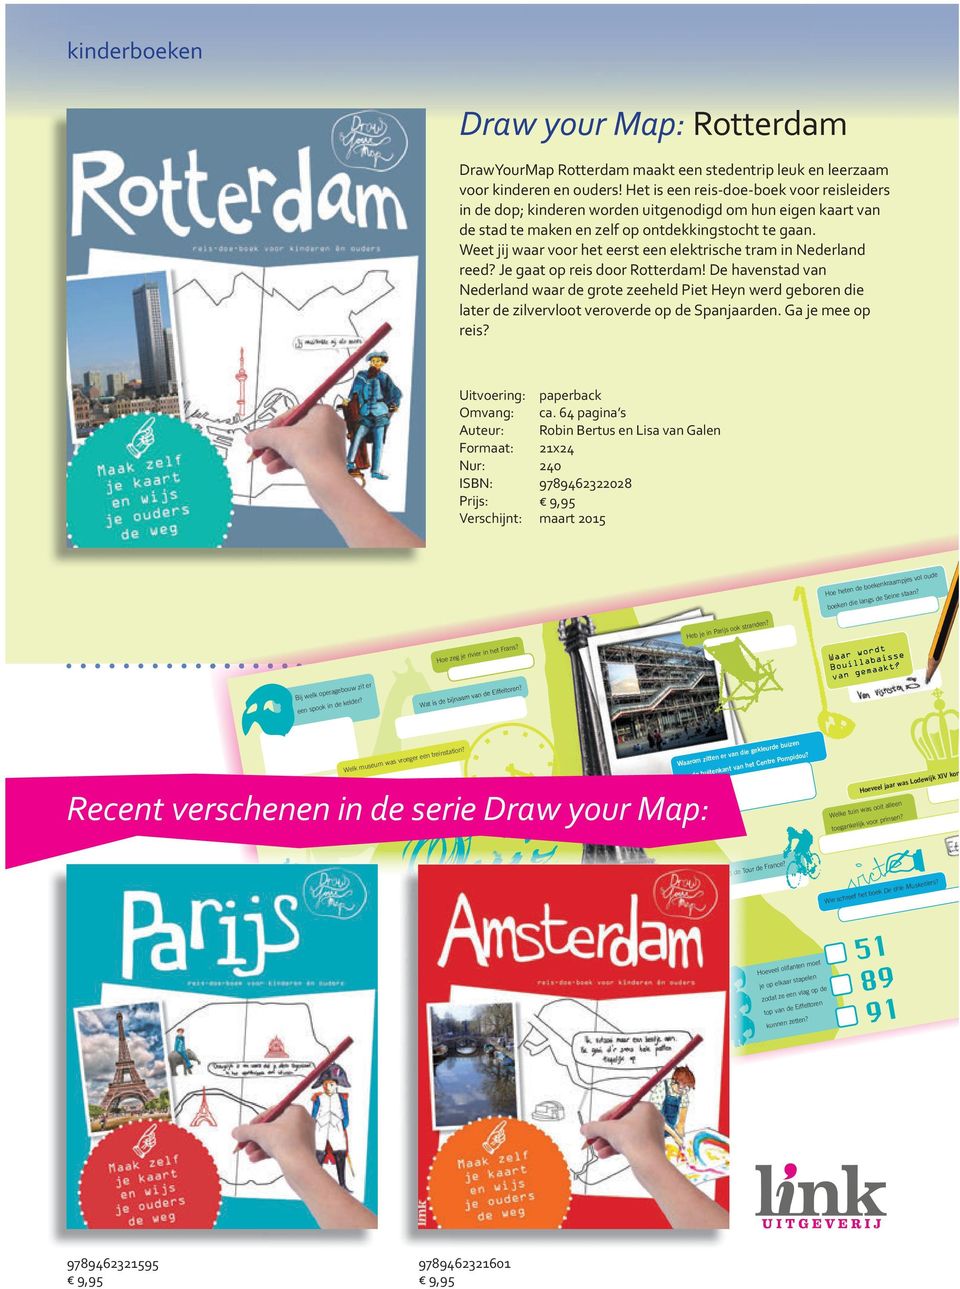 Weet jij waar voor het eerst een elektrische tram in Nederland reed? Je gaat op reis door Rotterdam!